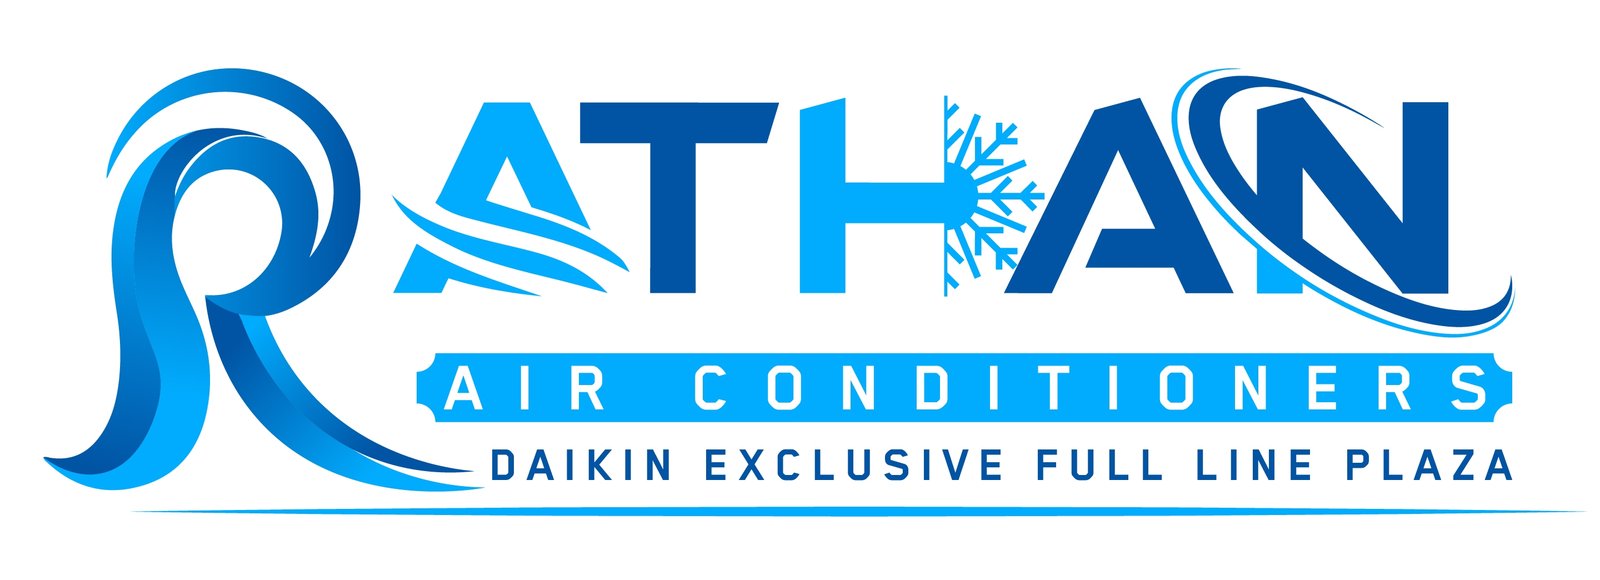 Daikin AC Logo